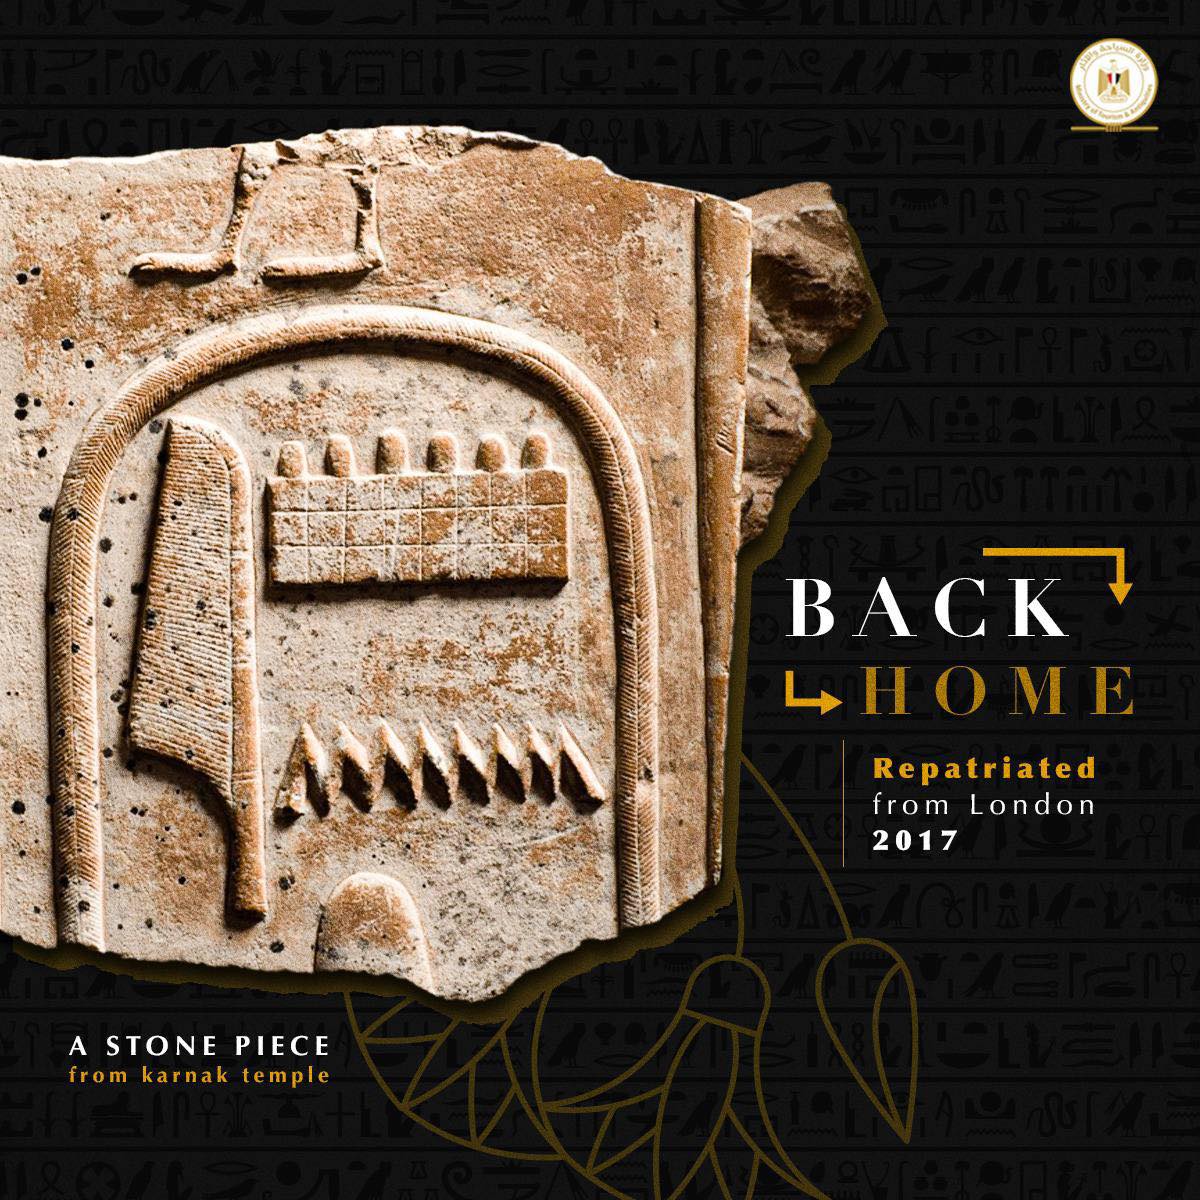 The stone piece retrieved by Egypt